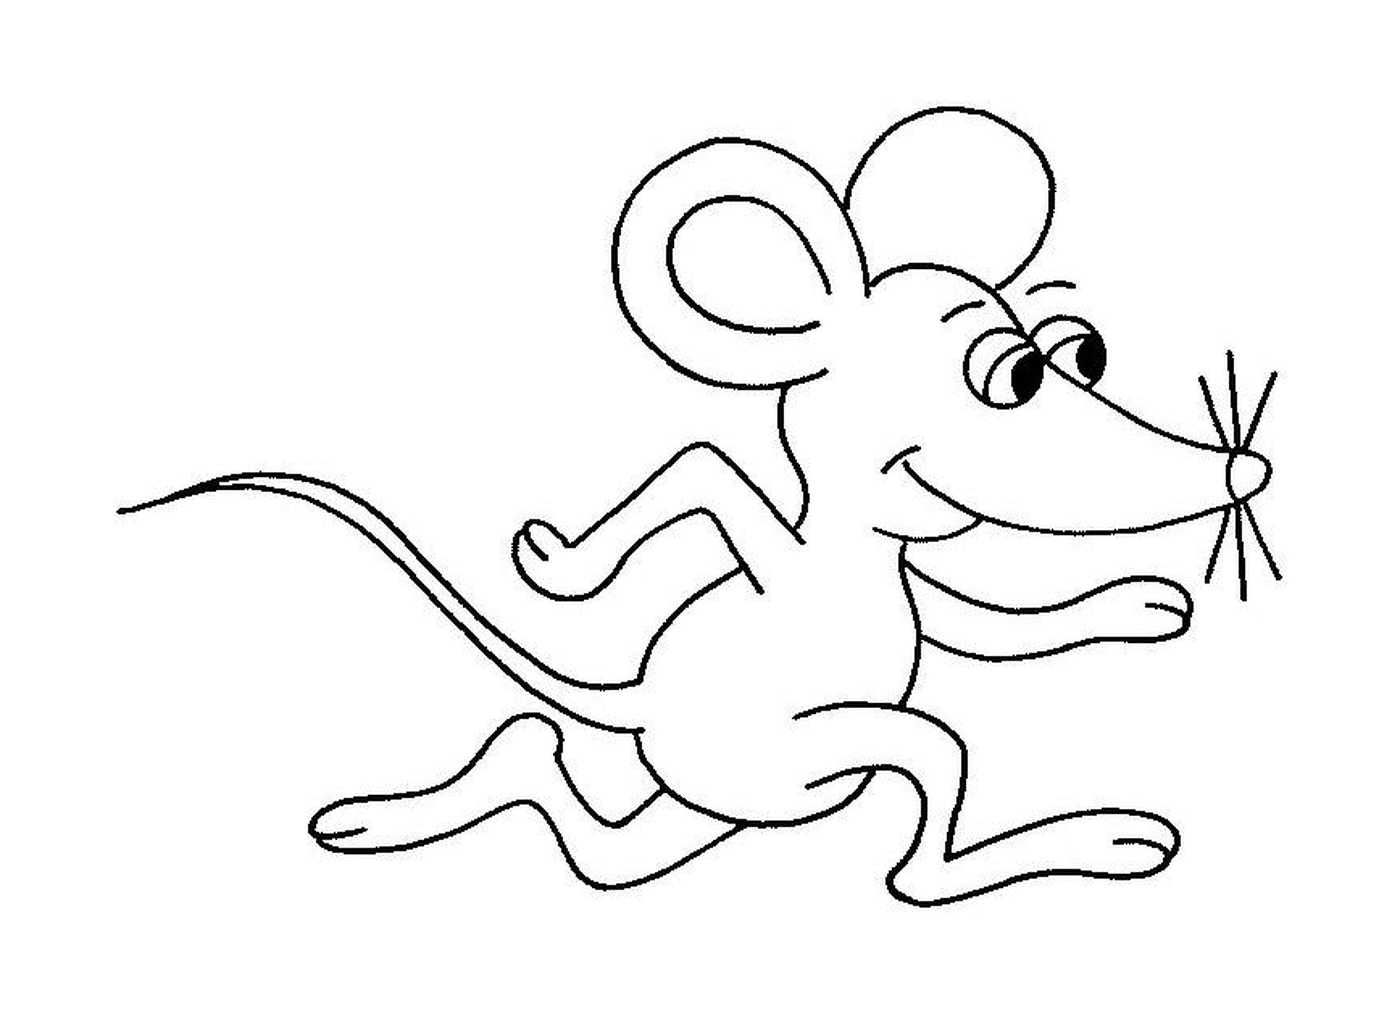  Un mouse in esecuzione 